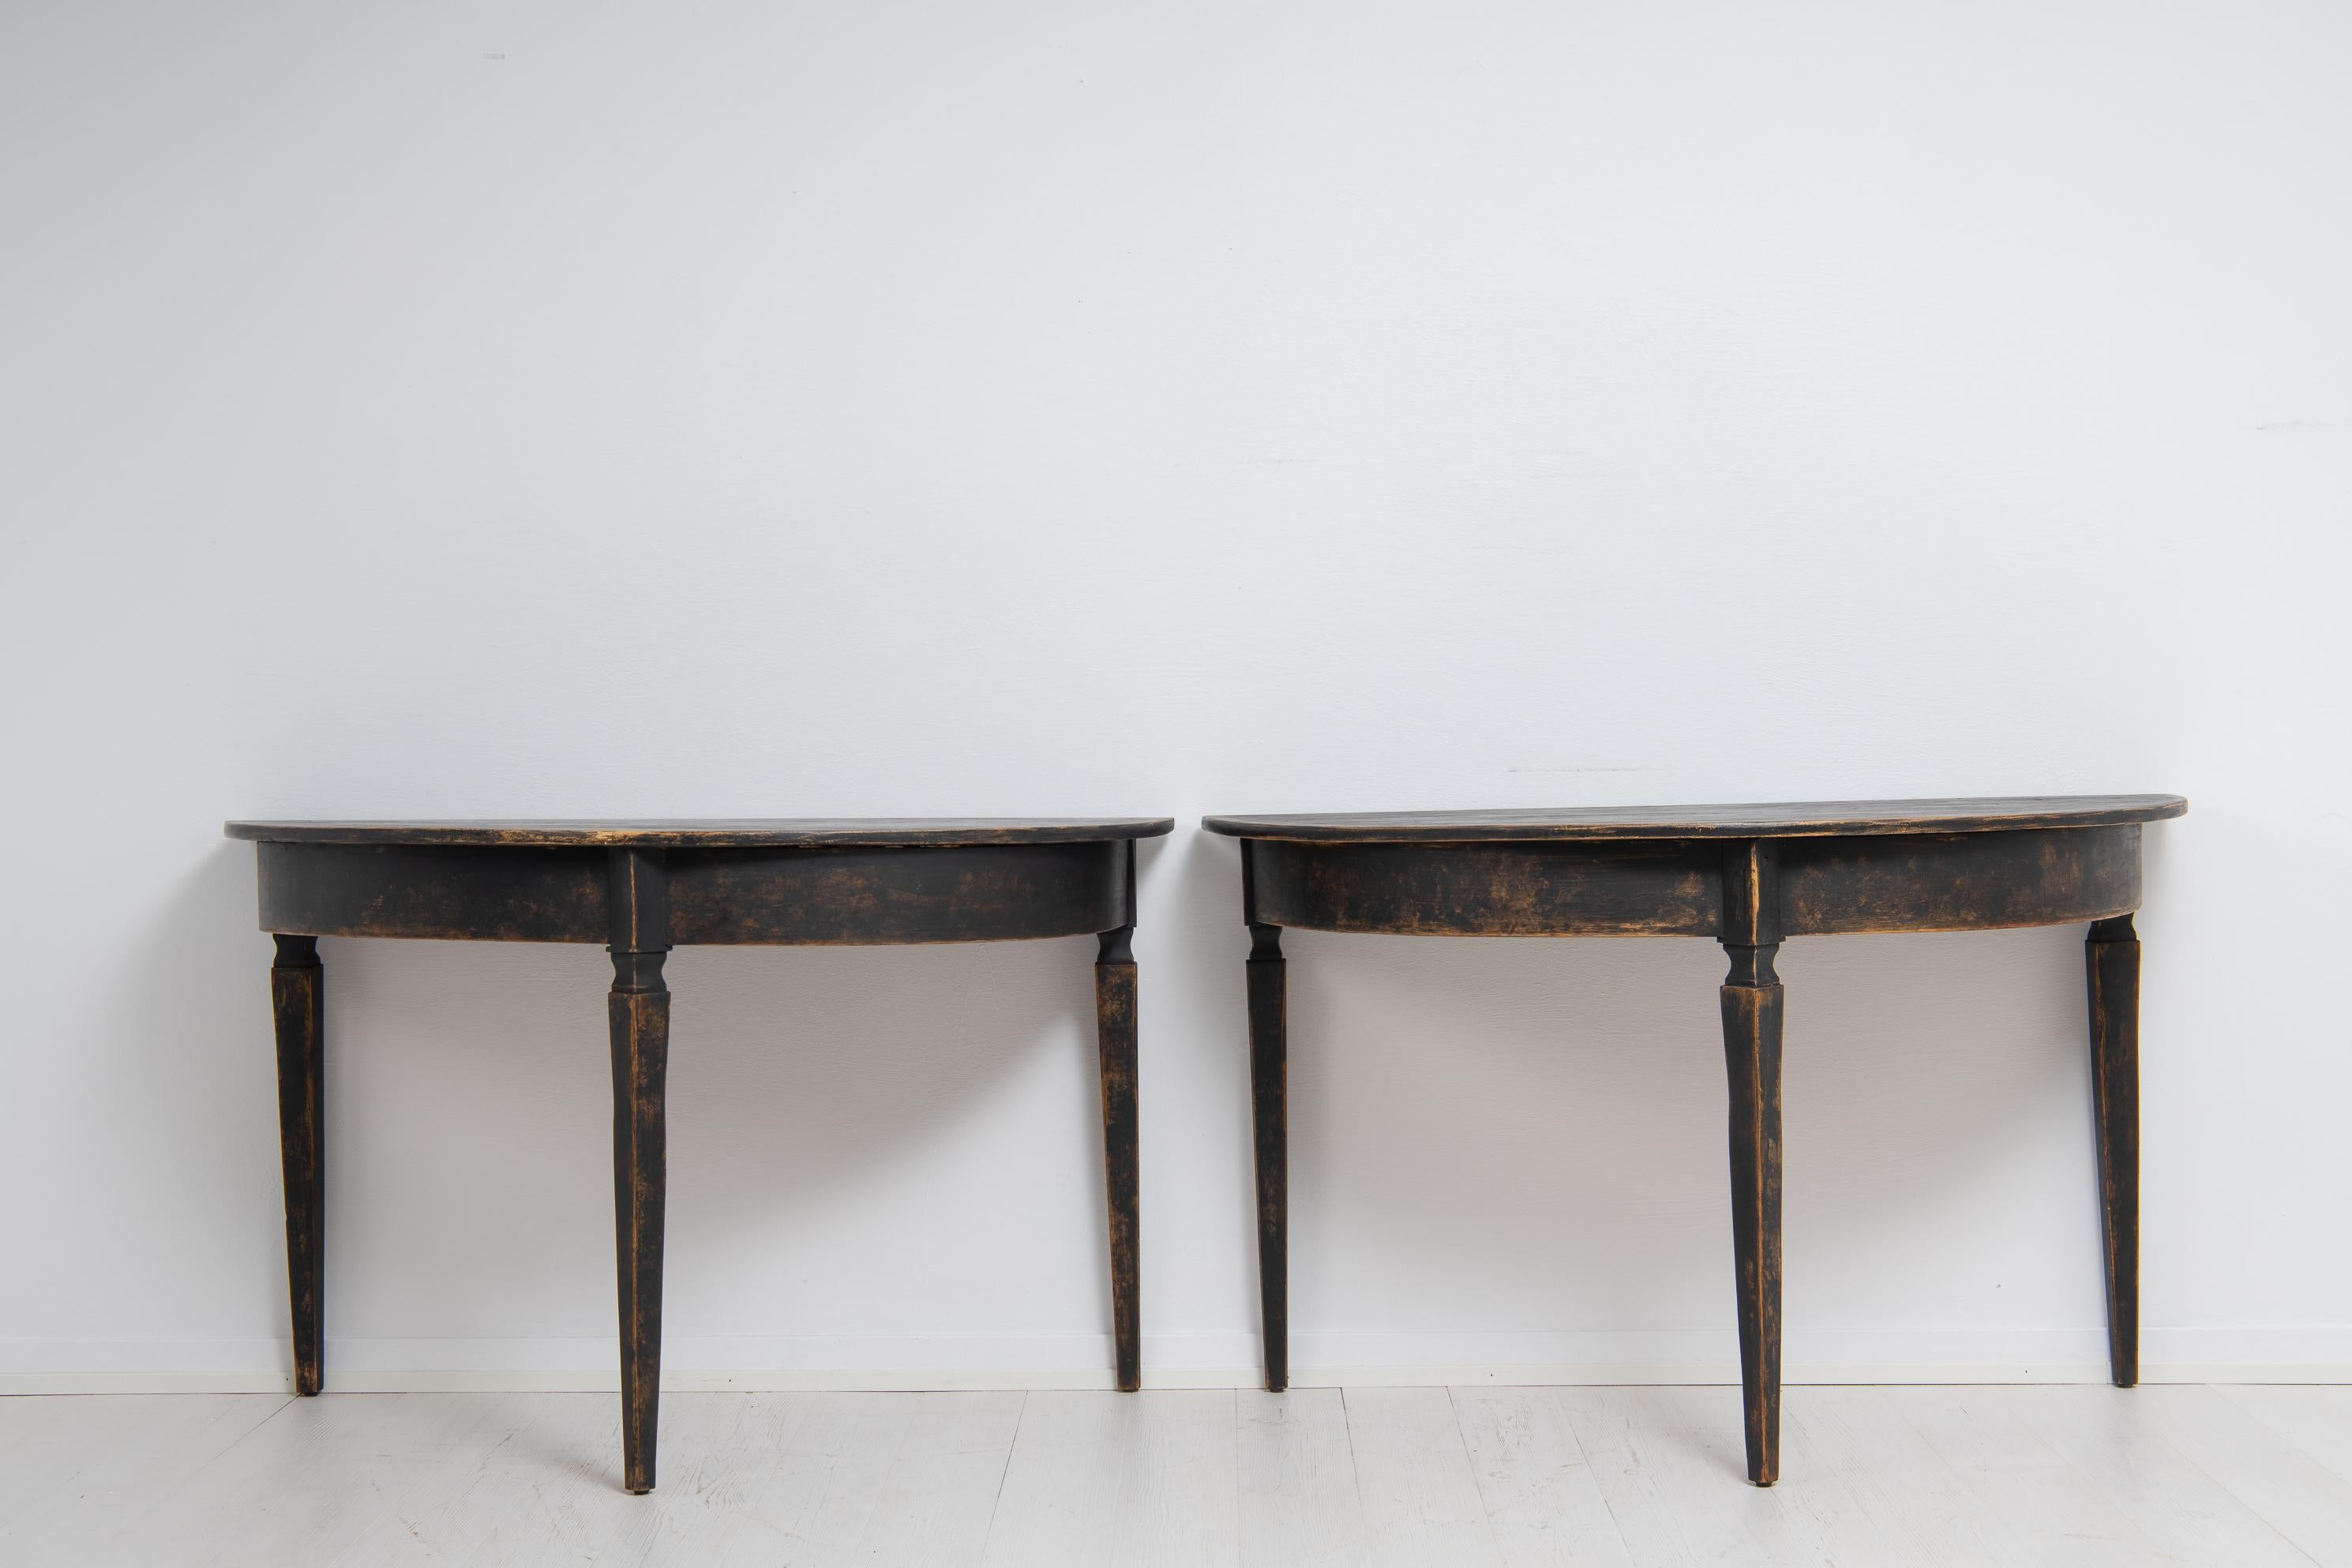 Zwei schwarze Demi-Lune-Tische aus Nordschweden aus der Mitte des 19. Jahrhunderts. Die Tische stammen aus der Zeit um 1860 und sind schwarz gestrichen. Die Tische haben nur minimale Verzierungen für einen sehr sauberen und minimalistischen Look.